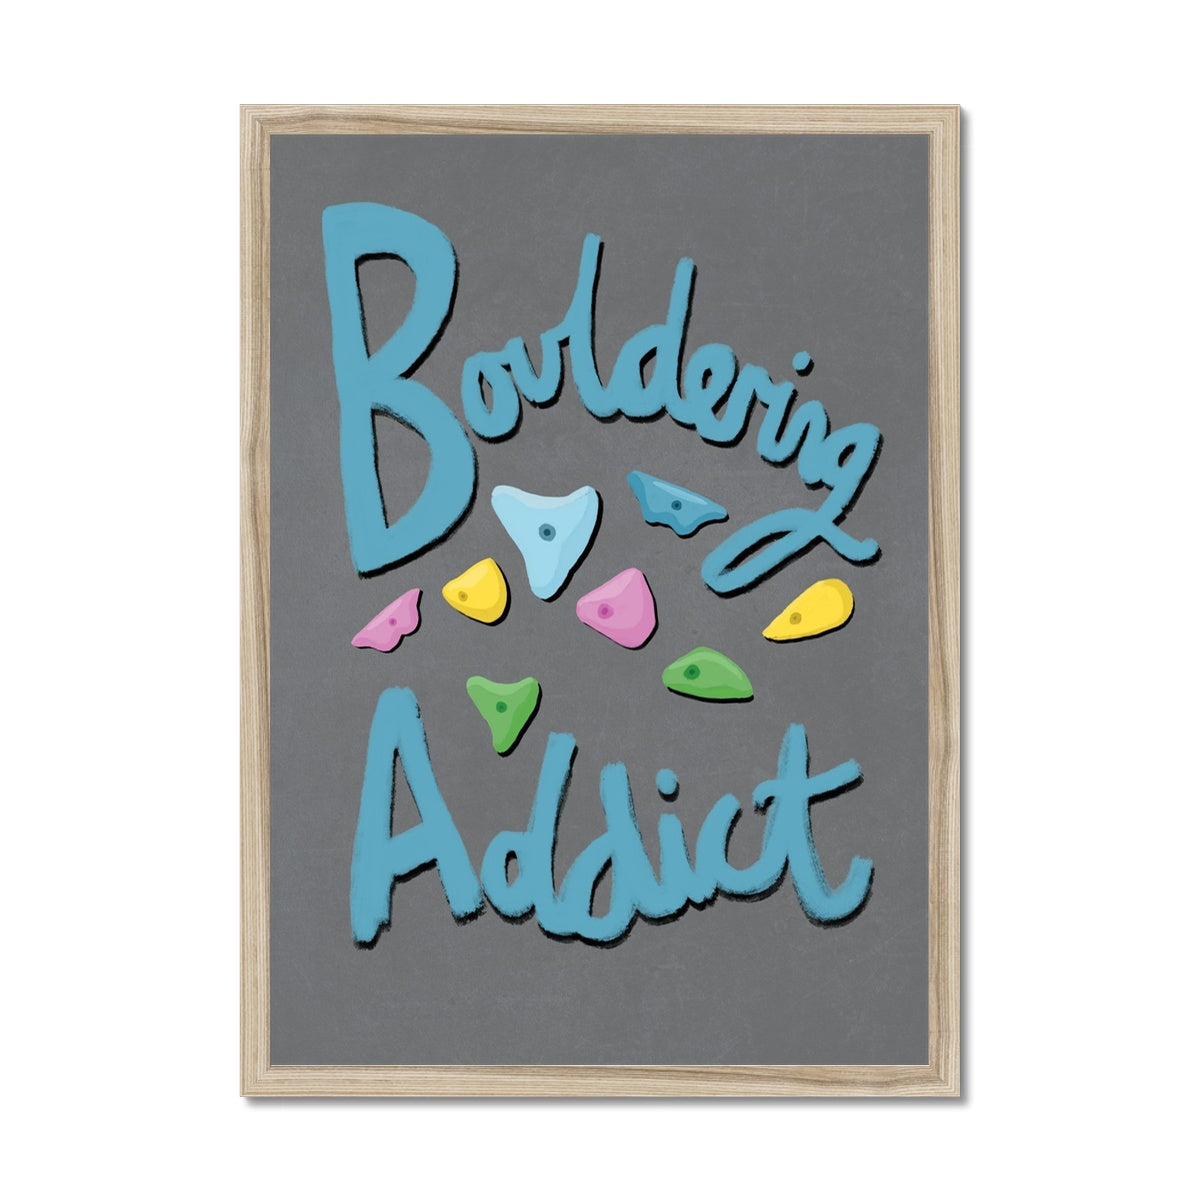 Bouldering Addict - Grey and Blue Framed Print